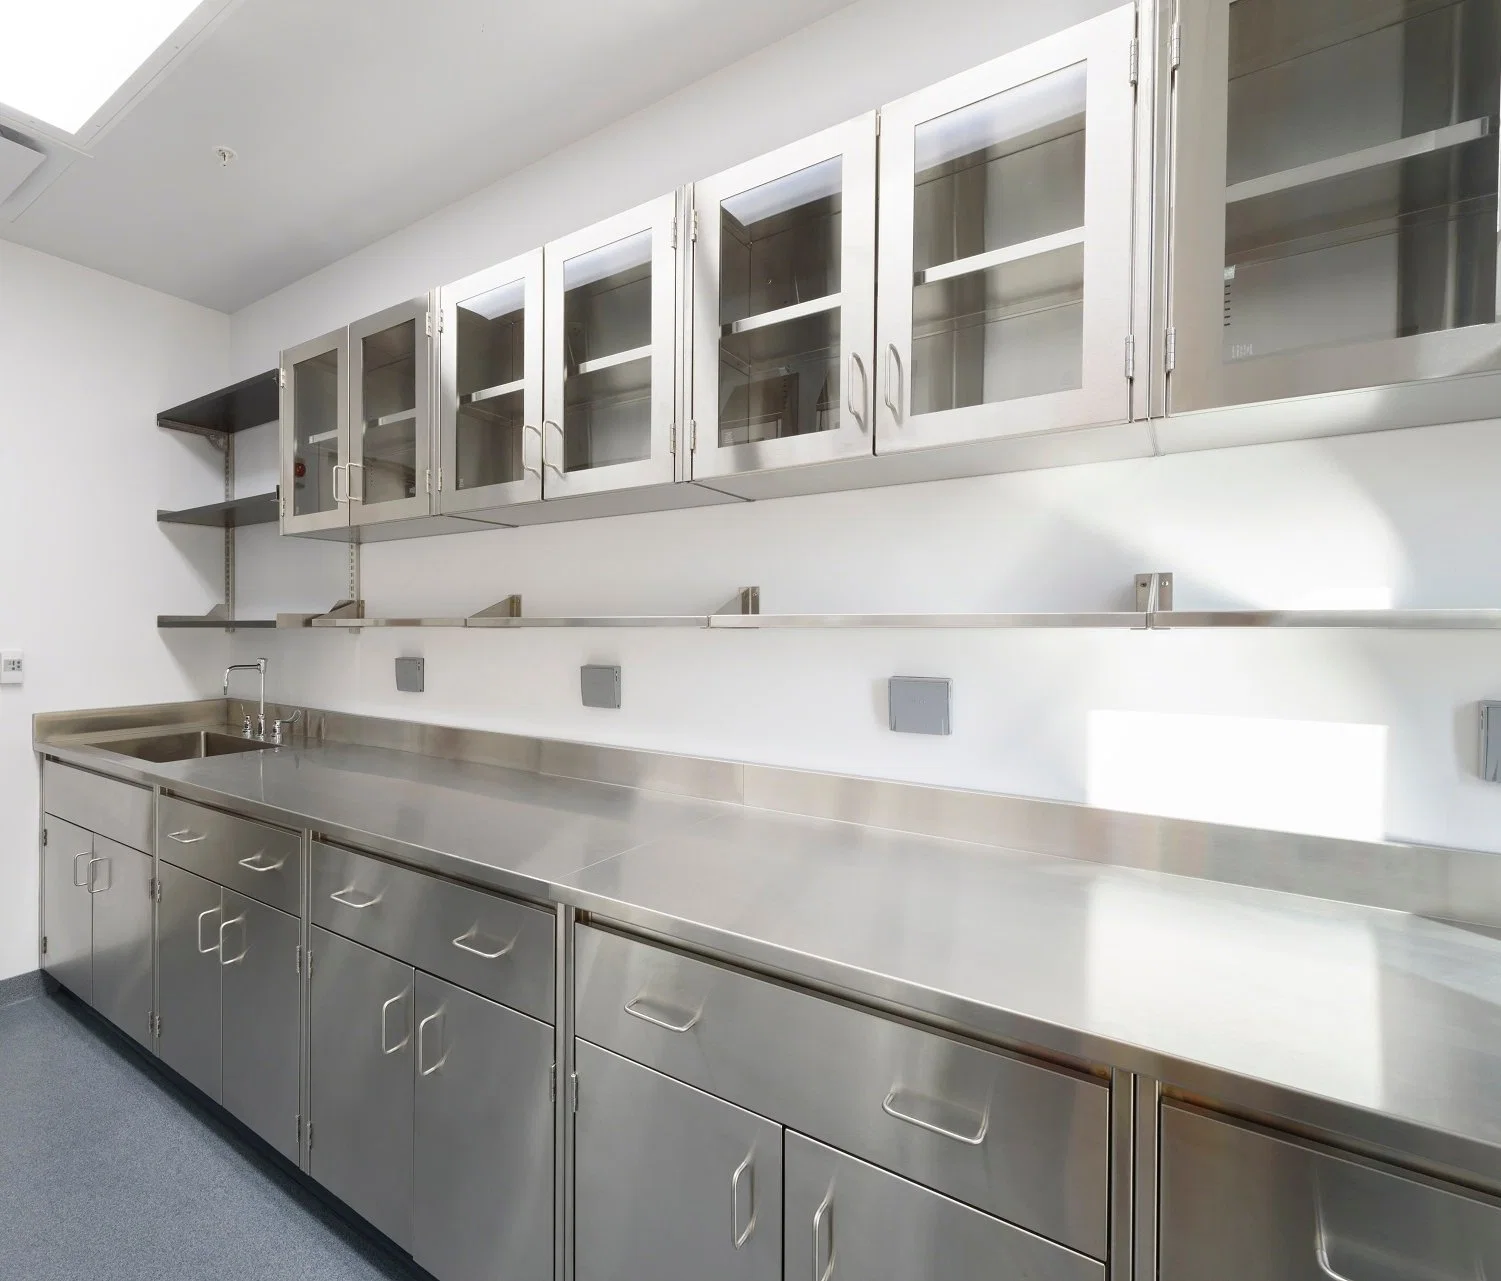 Indústria alimentar laboratórios Chem Industrial preços móveis prova de bactérias limpo Sala 304ss aço inoxidável Lab mobiliário